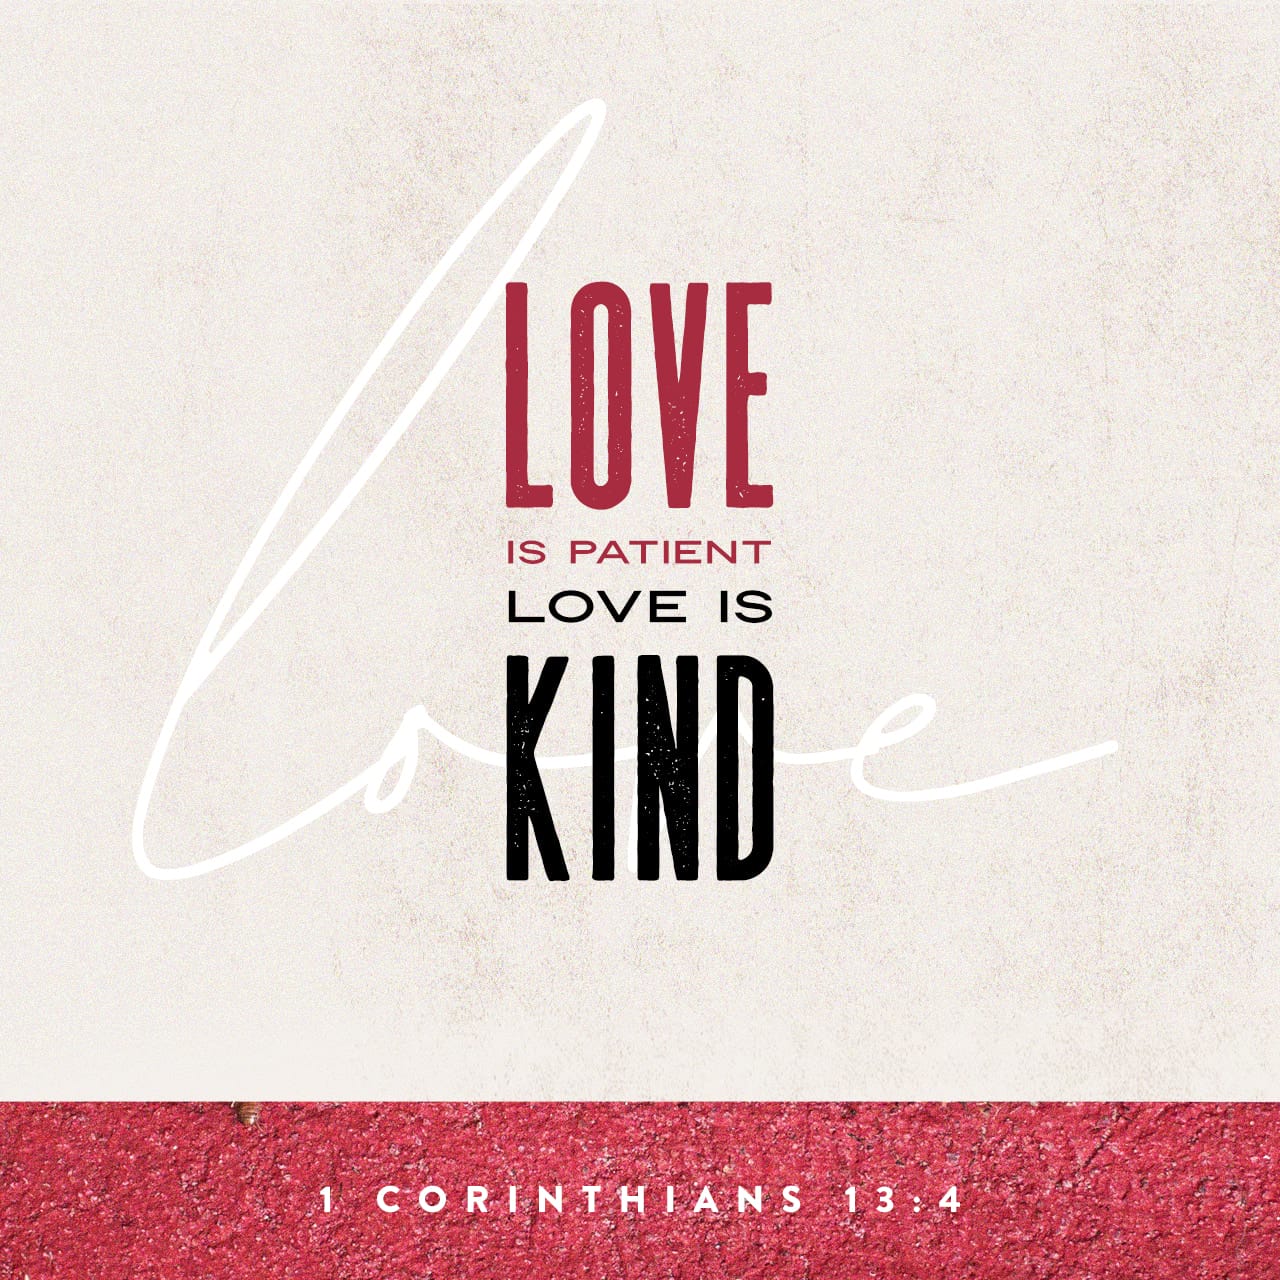 Verse Image for 1 Corinthians 13:4